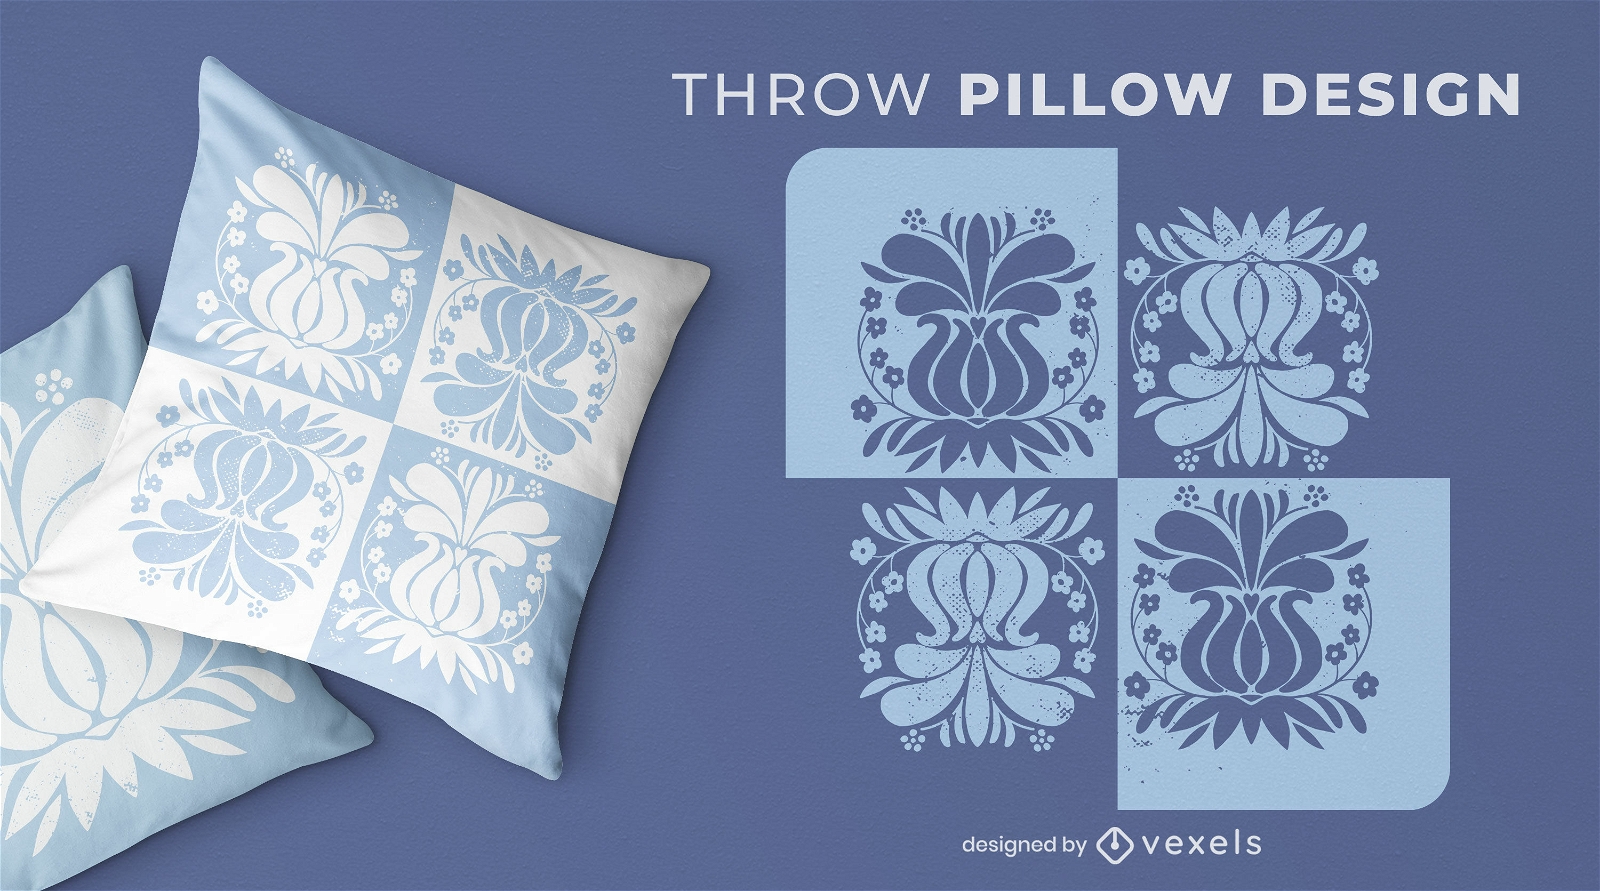 Diseño de almohada de tiro azul de flores vintage